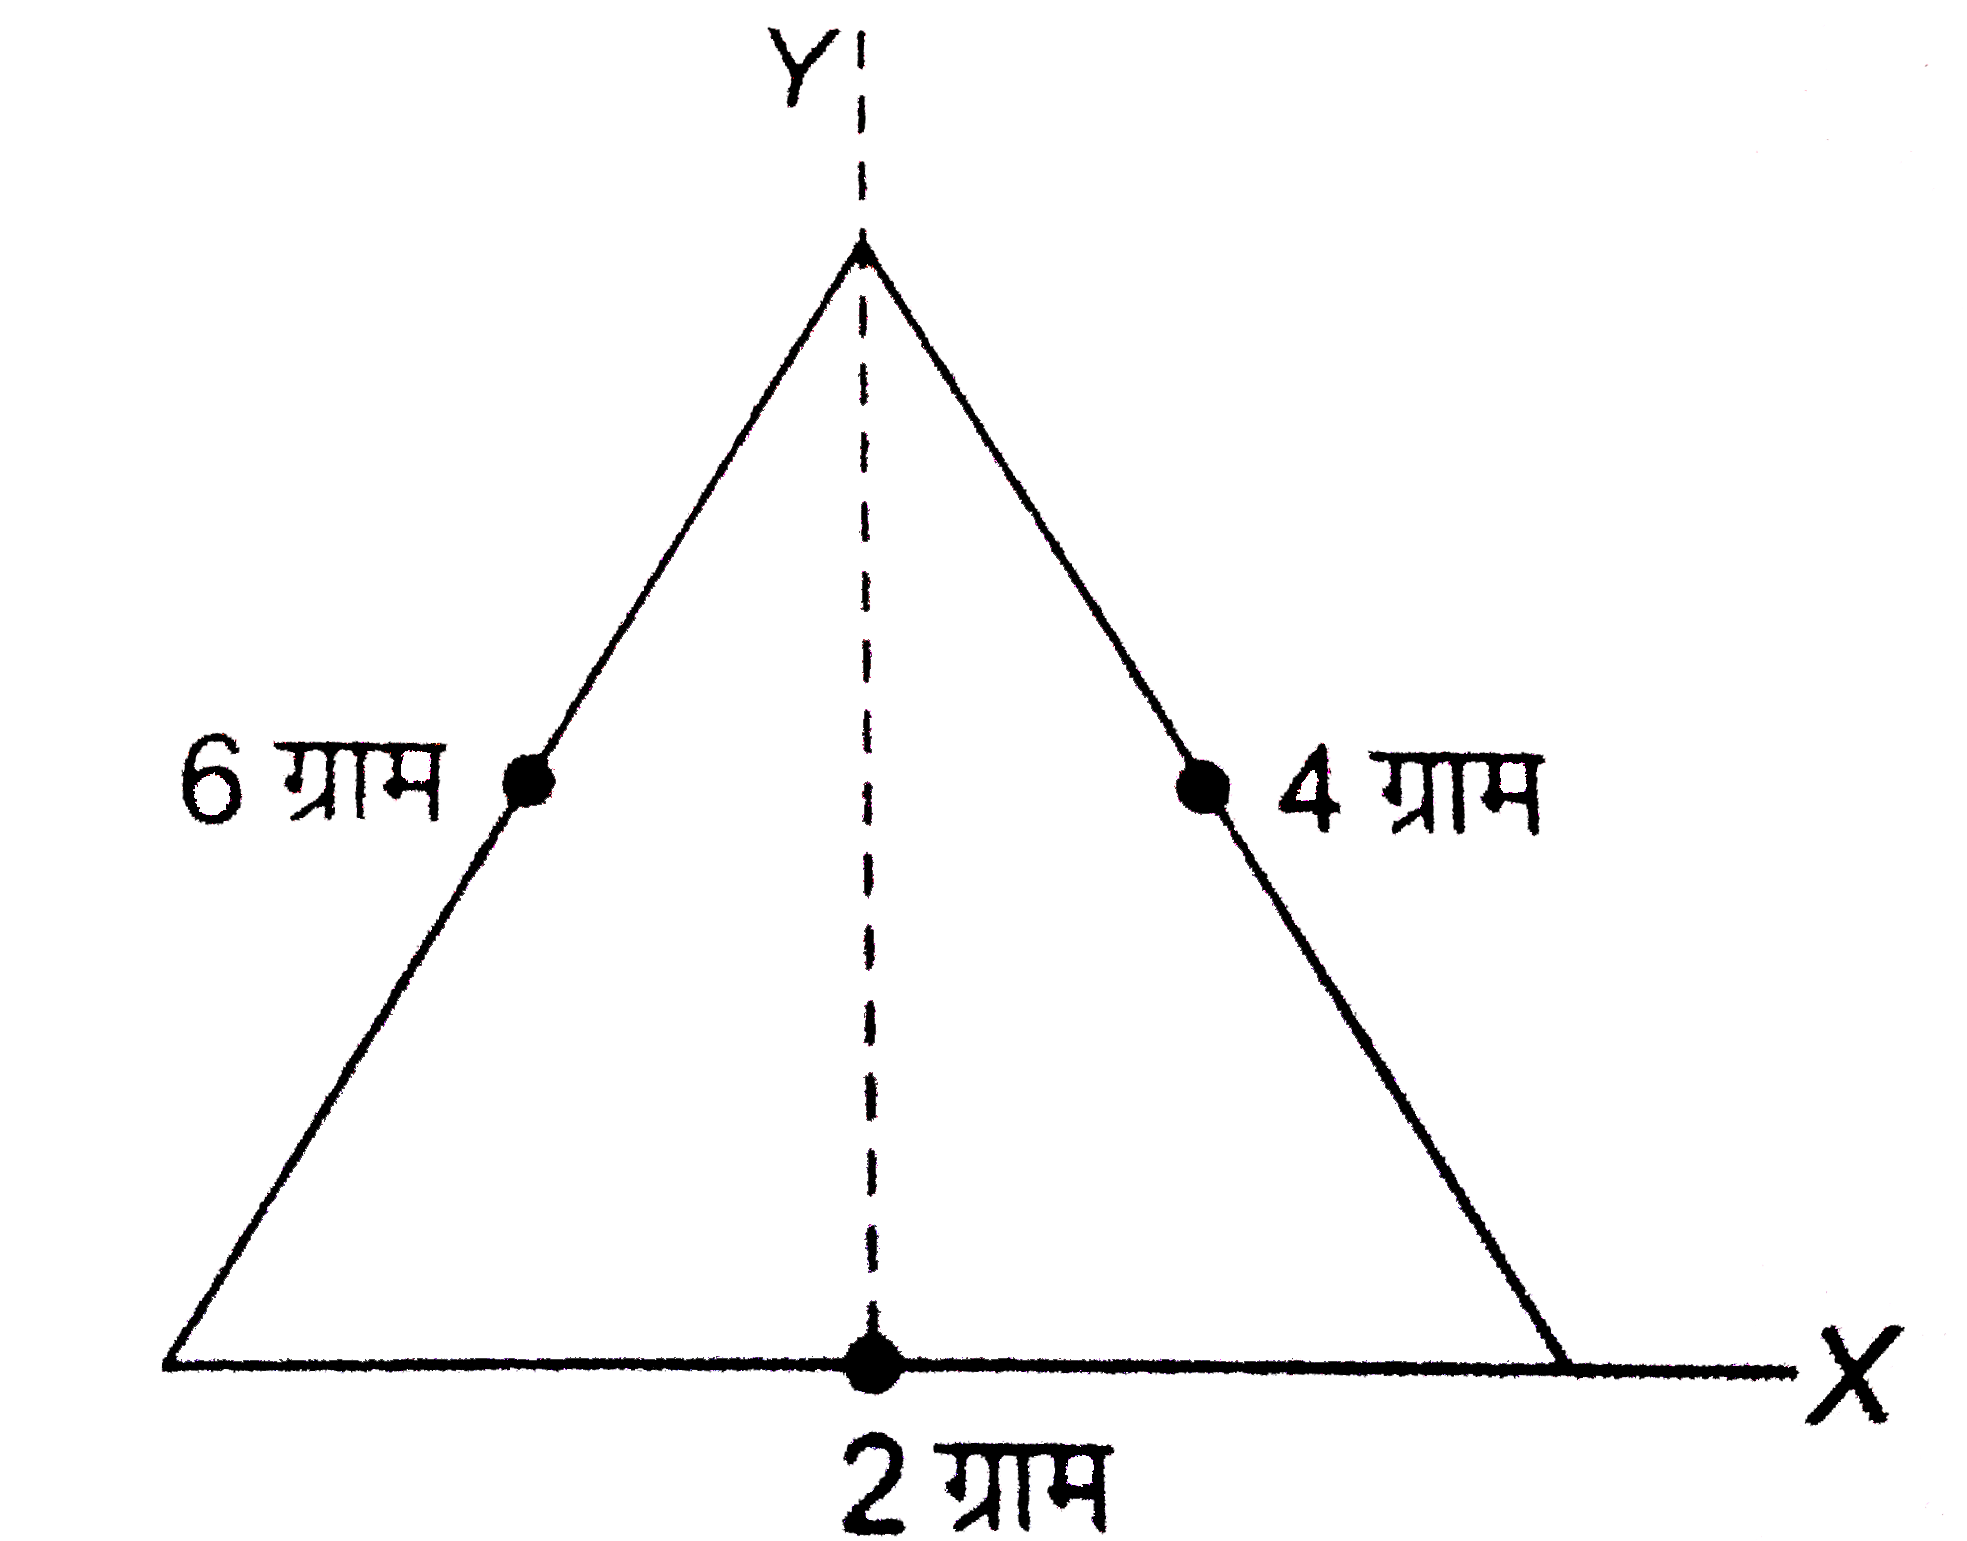 2 ग्राम , 4 ग्राम व 6 ग्राम के कण एक समबाहु त्रिभुज कि भुजाओं के मध्य - बिंदु पर रखे है जिसकी प्रत्येक भुजा कि लम्बाई 2 सेमी है | निकाय के द्रव्यमान केन्द्र के निर्देशांक 2 ग्राम द्रव्यमान के सापेक्ष ज्ञात कीजिये |